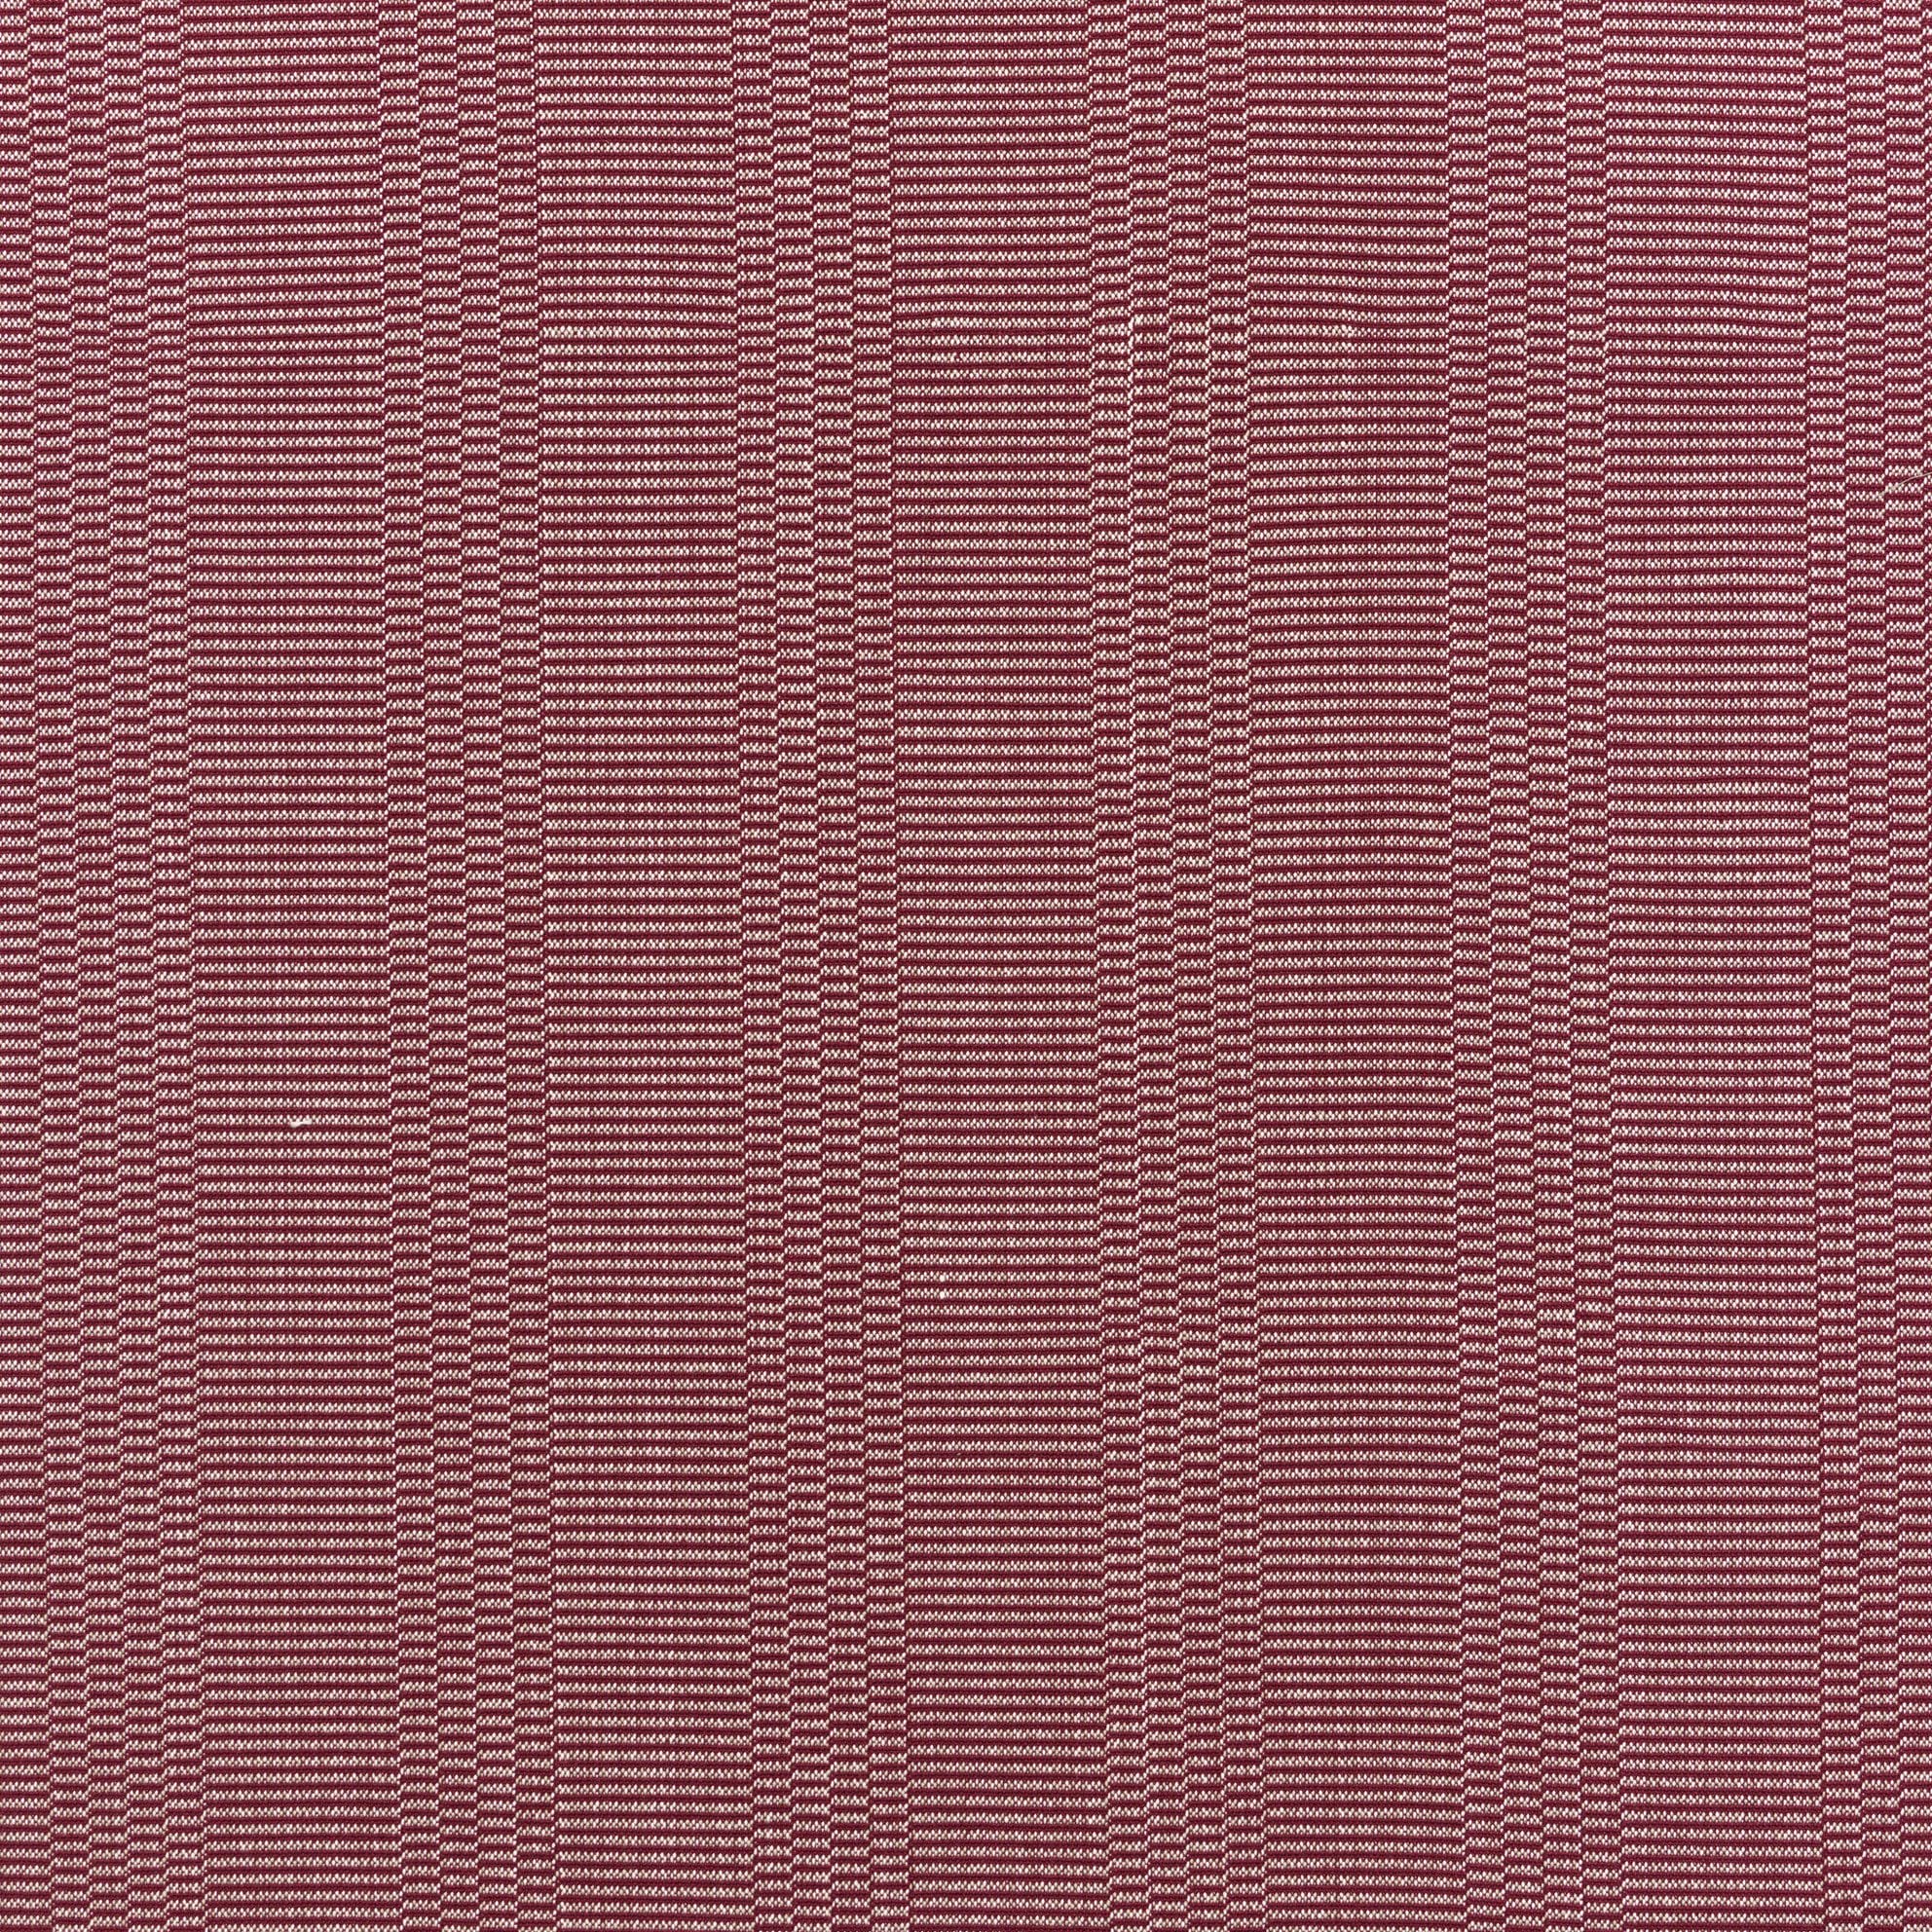 Eos Cotton Fabric - Bordeaux | Nicholas Engert Interiors